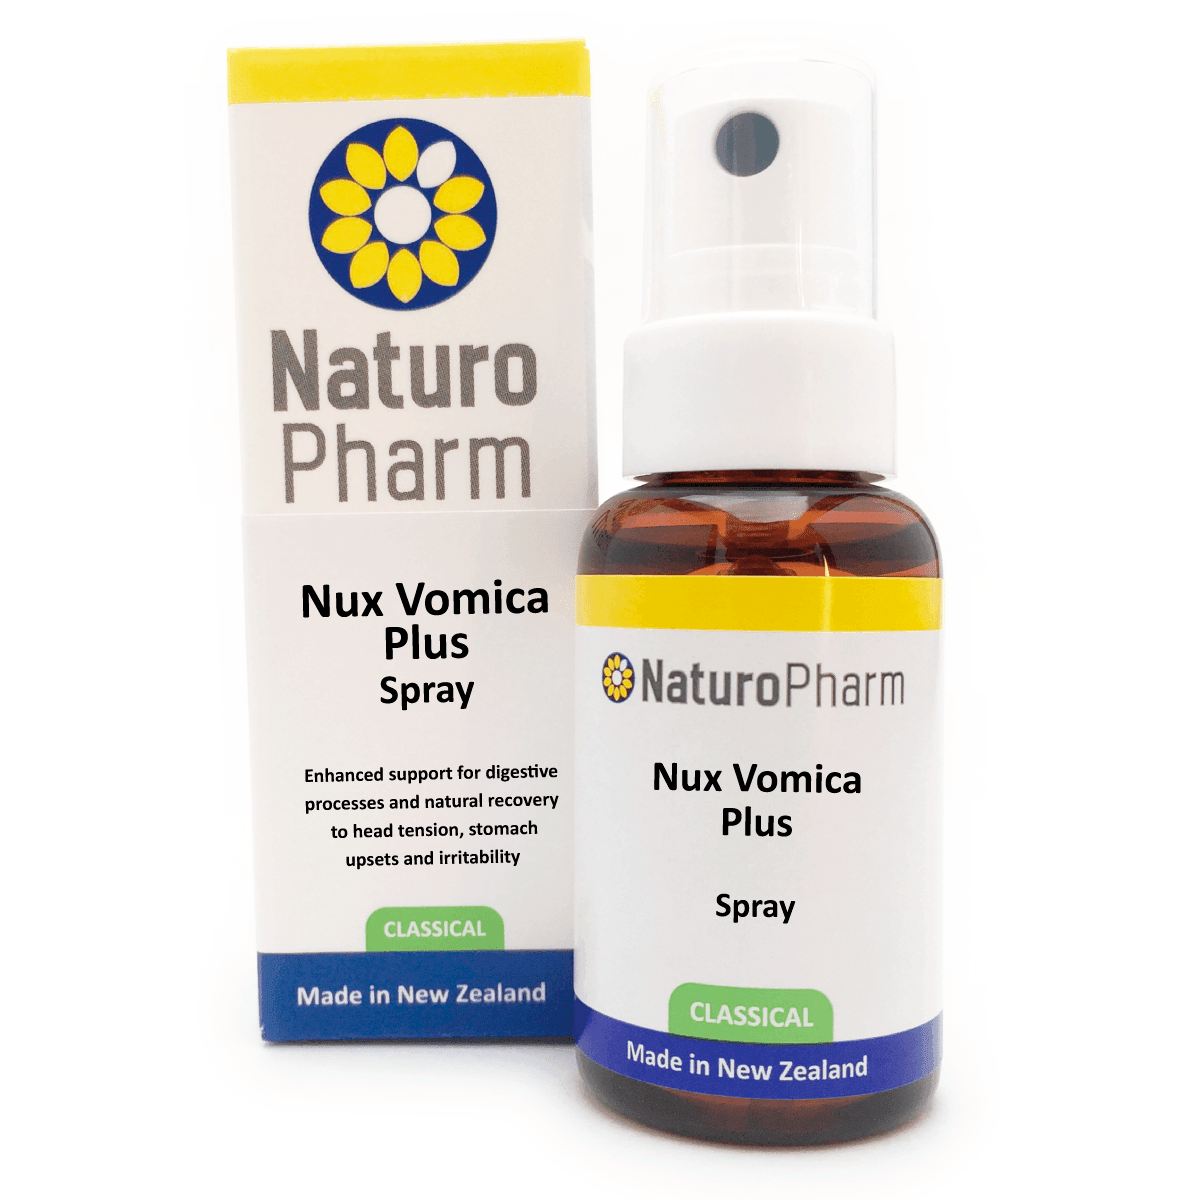 Naturo Pharm Nux Vomica Plus